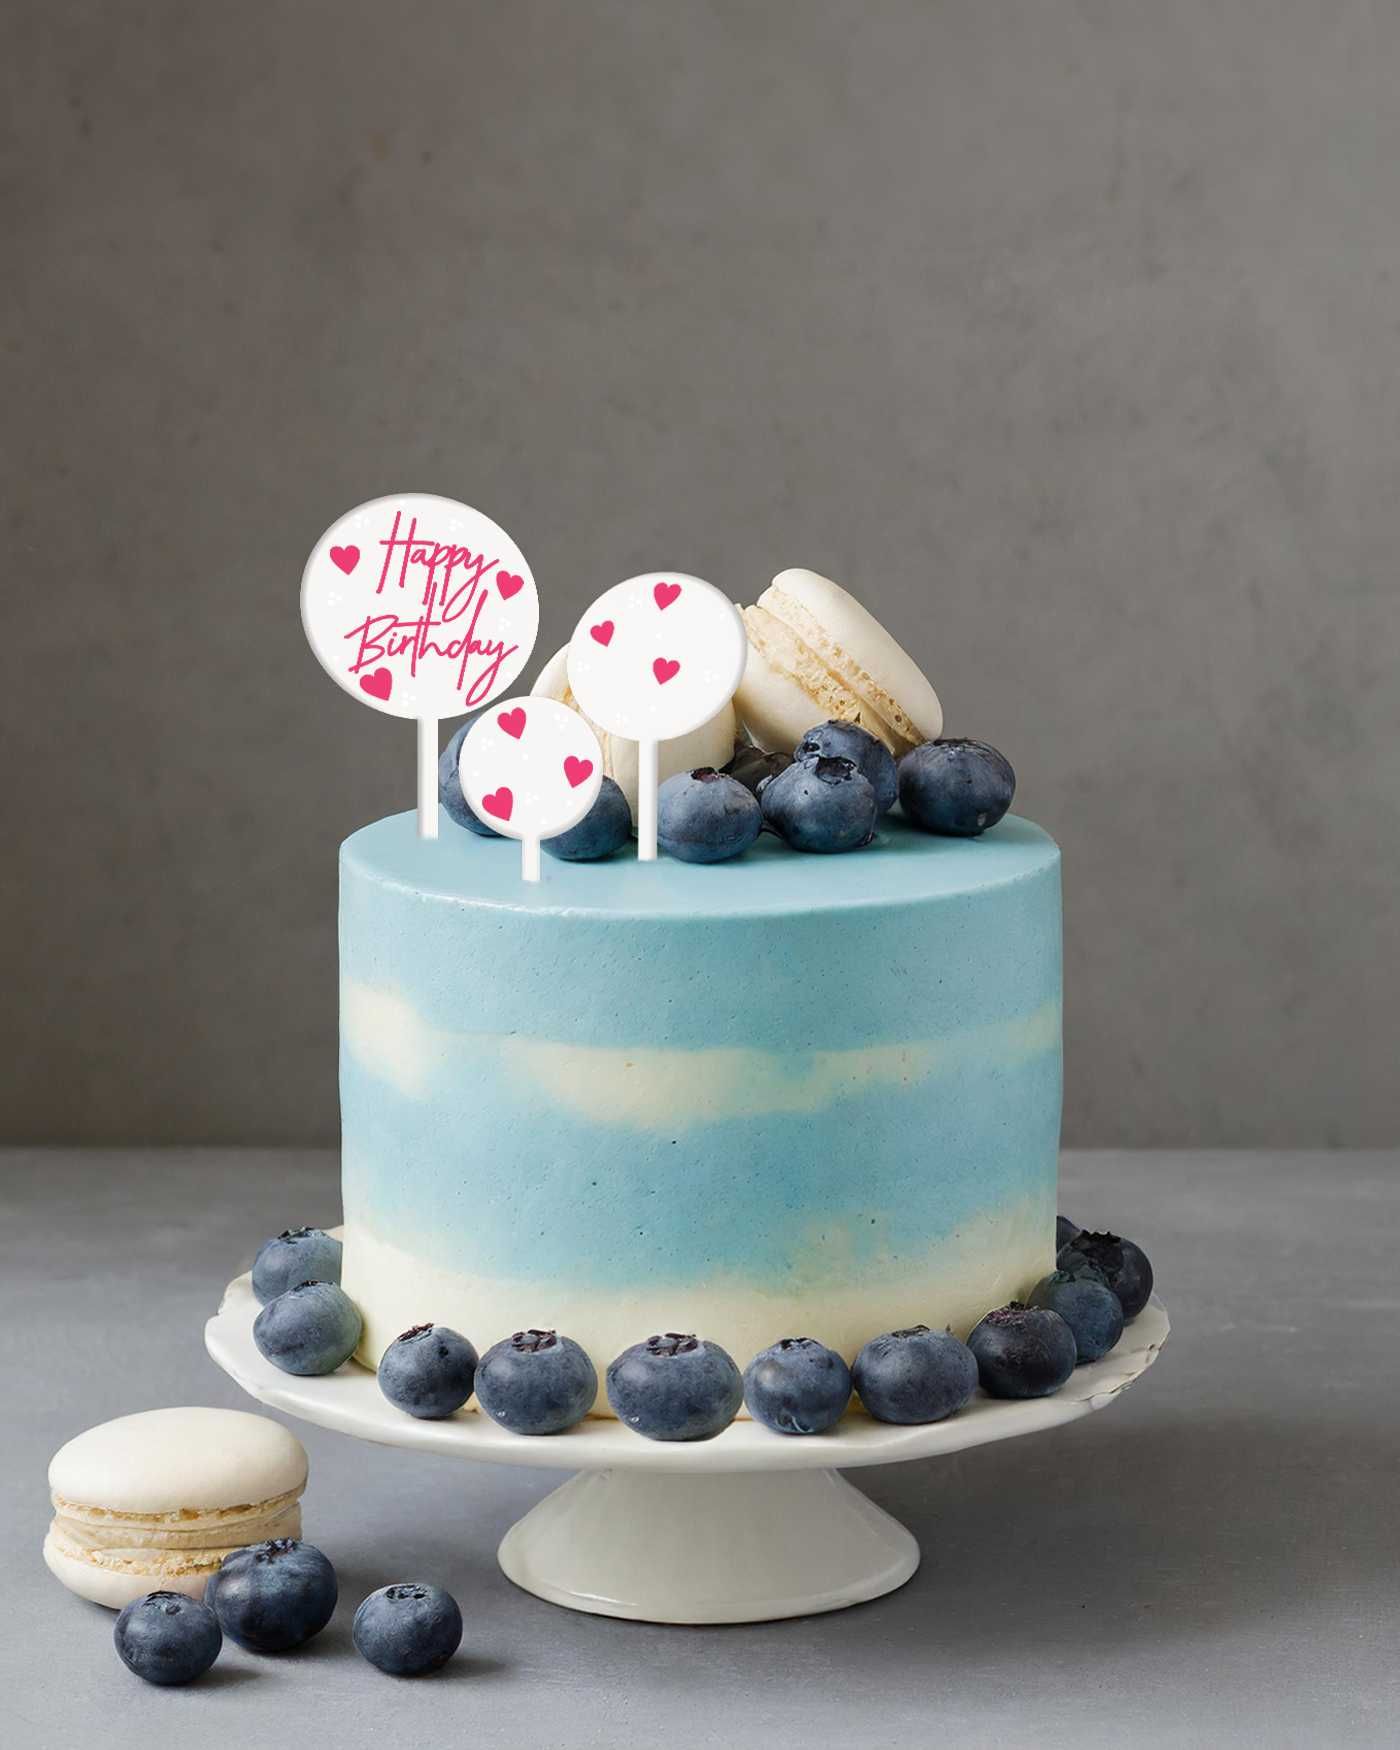 Komplet topperów na tort z napisem “Happy birthday”